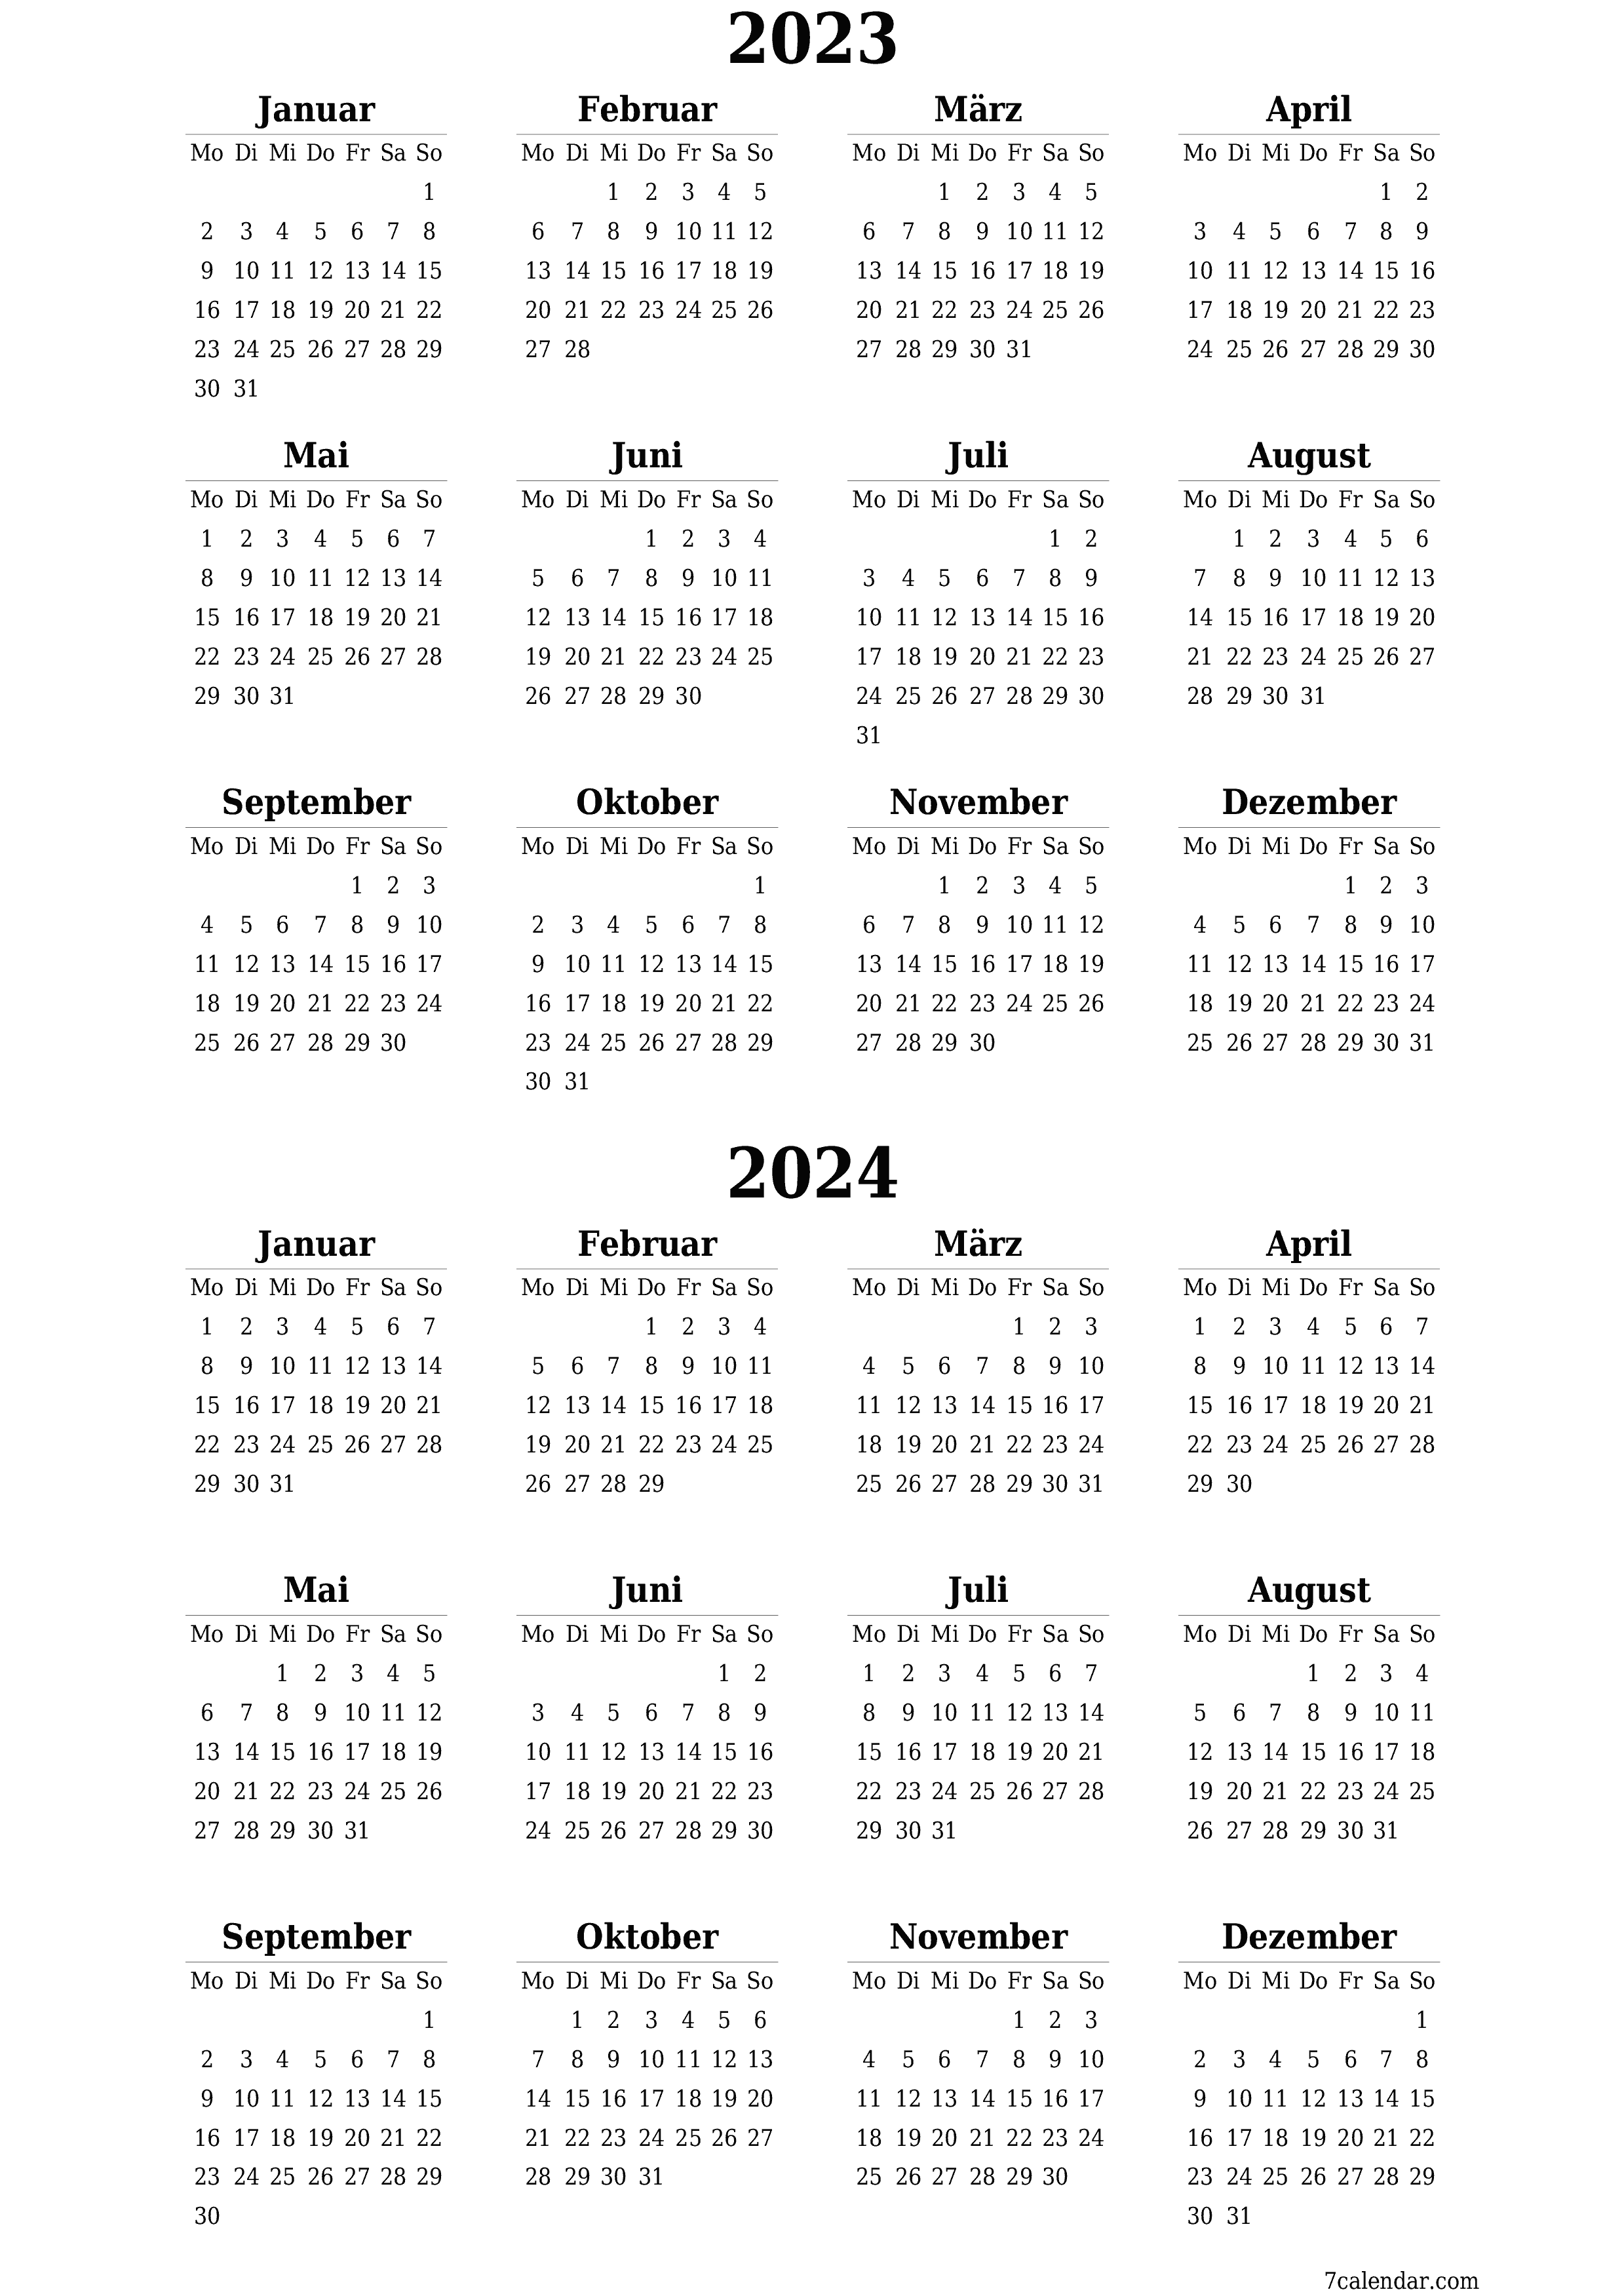 Jahresplanerkalender für das Jahr 2023, 2024 mit Notizen leeren, speichern und als PDF PNG German - 7calendar.com drucken